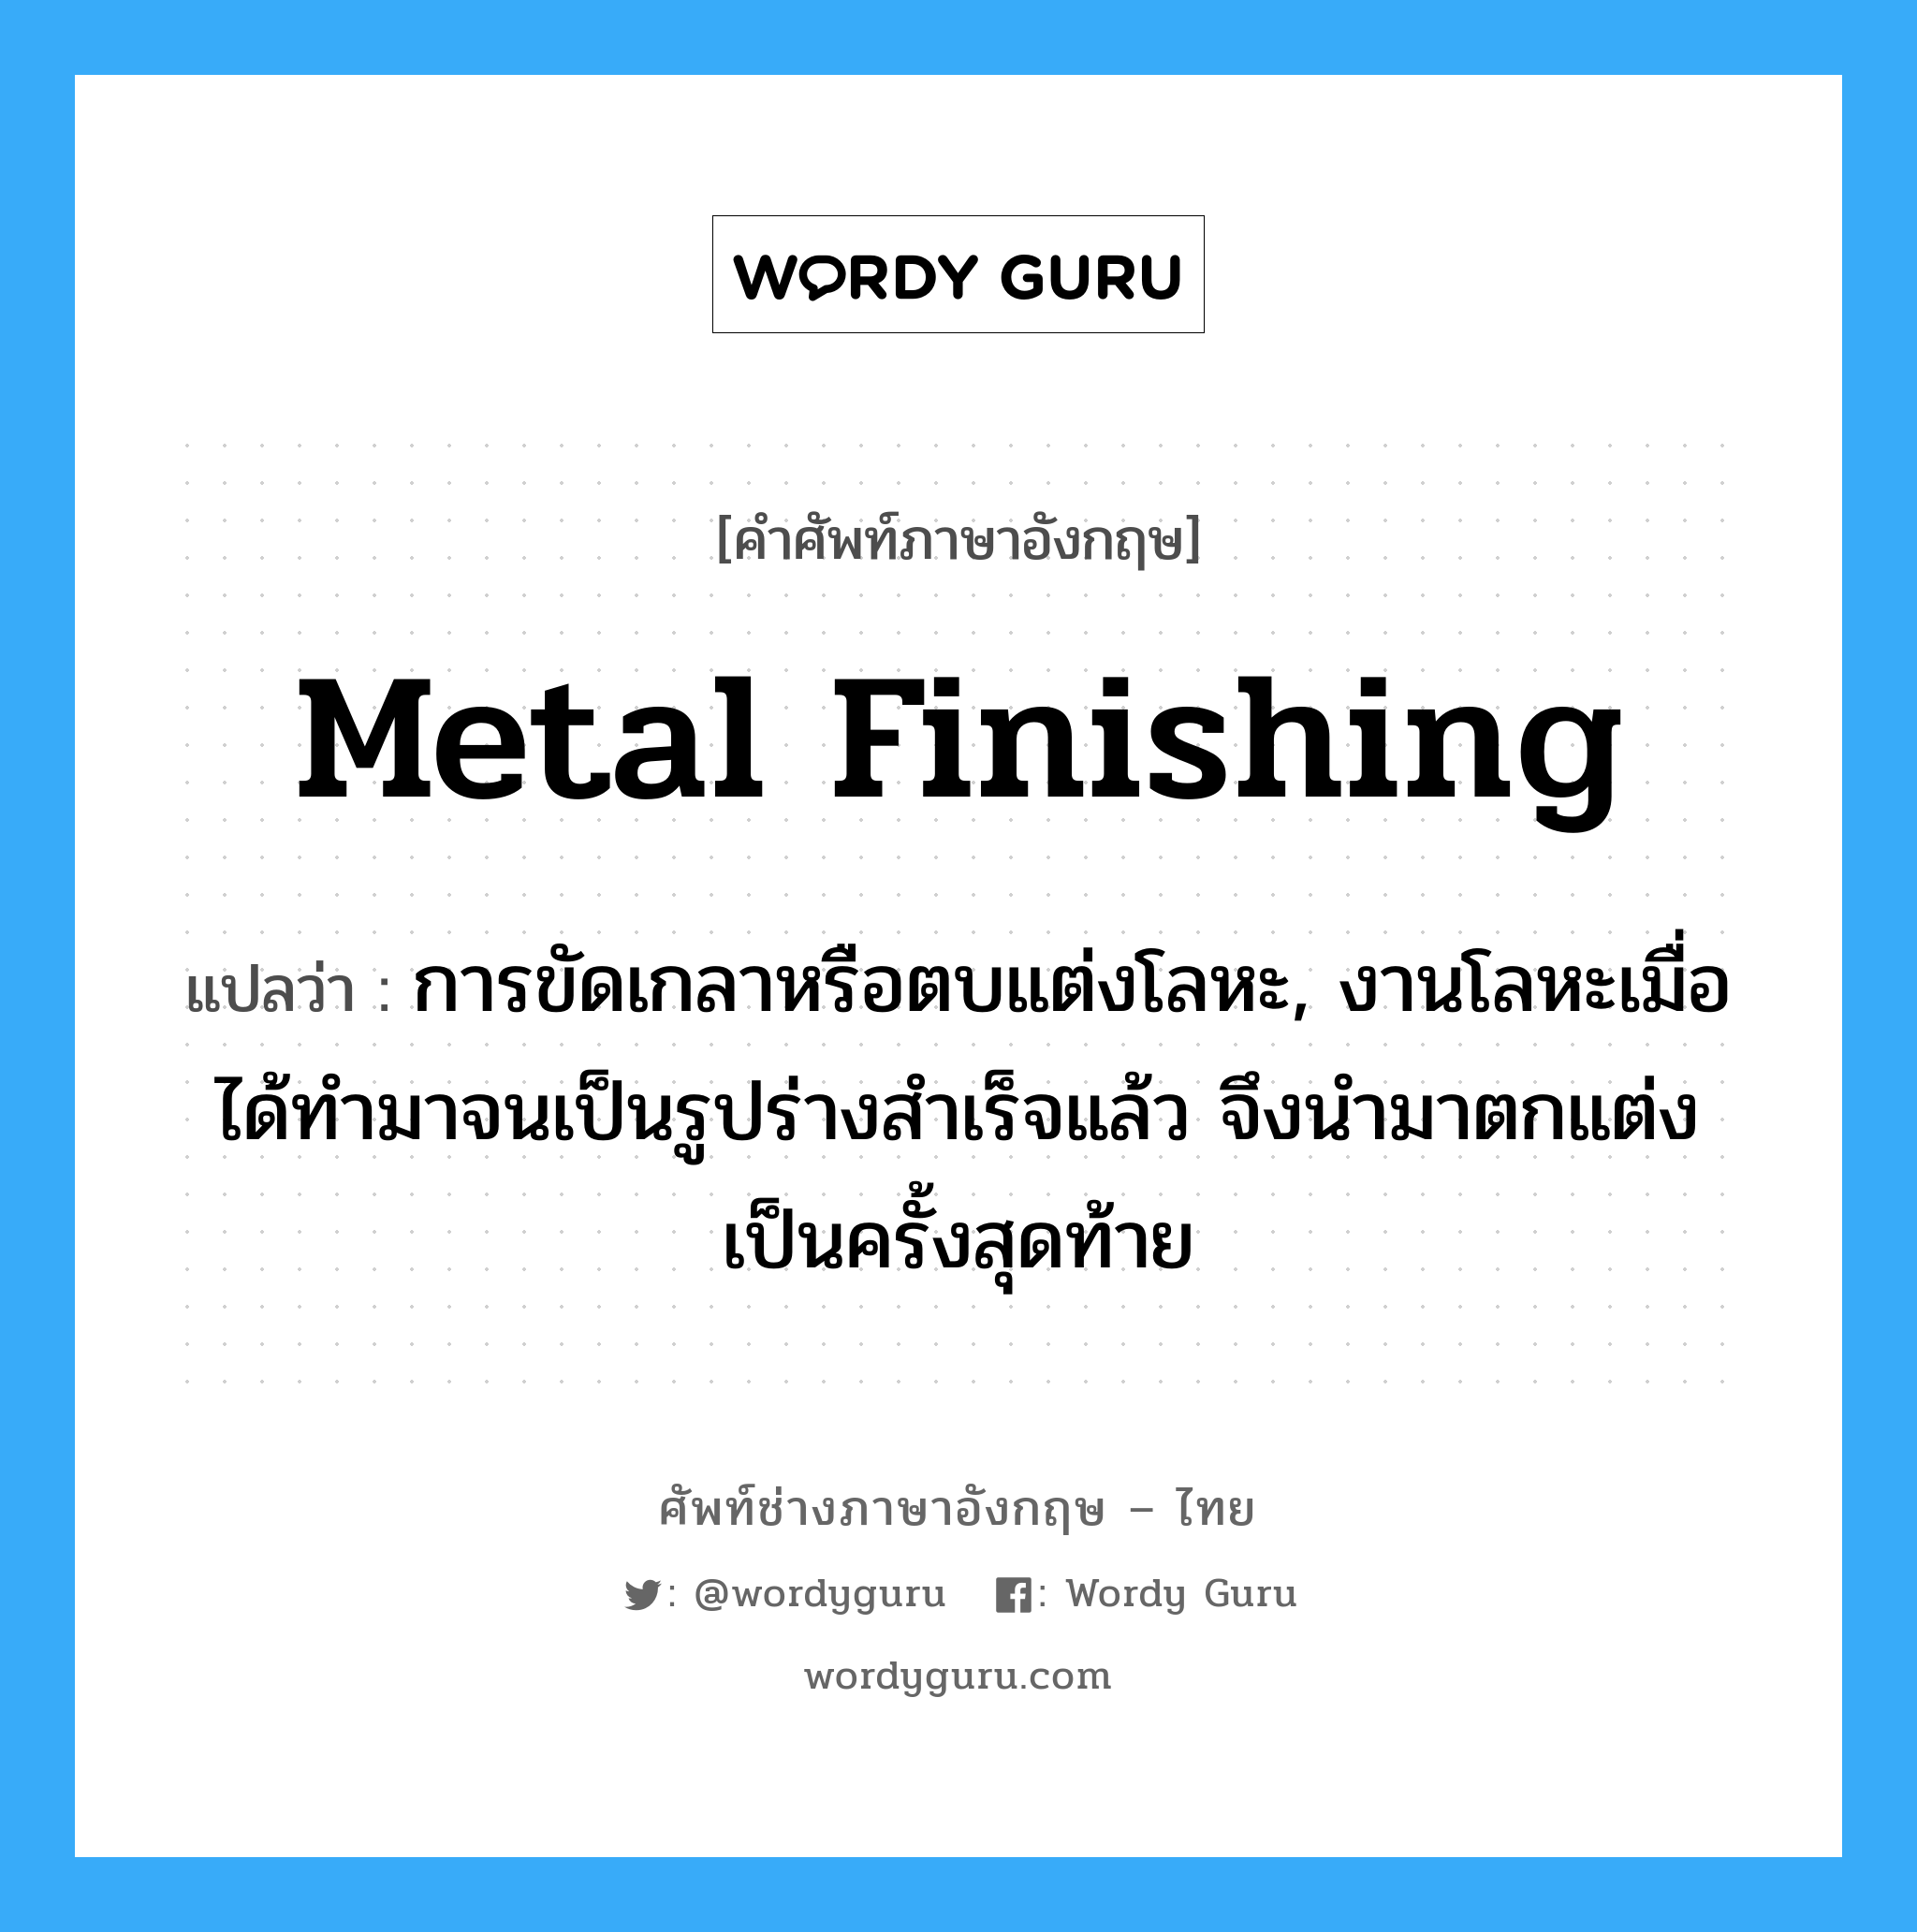 metal finishing แปลว่า?, คำศัพท์ช่างภาษาอังกฤษ - ไทย metal finishing คำศัพท์ภาษาอังกฤษ metal finishing แปลว่า การขัดเกลาหรือตบแต่งโลหะ, งานโลหะเมื่อได้ทำมาจนเป็นรูปร่างสำเร็จแล้ว จึงนำมาตกแต่งเป็นครั้งสุดท้าย